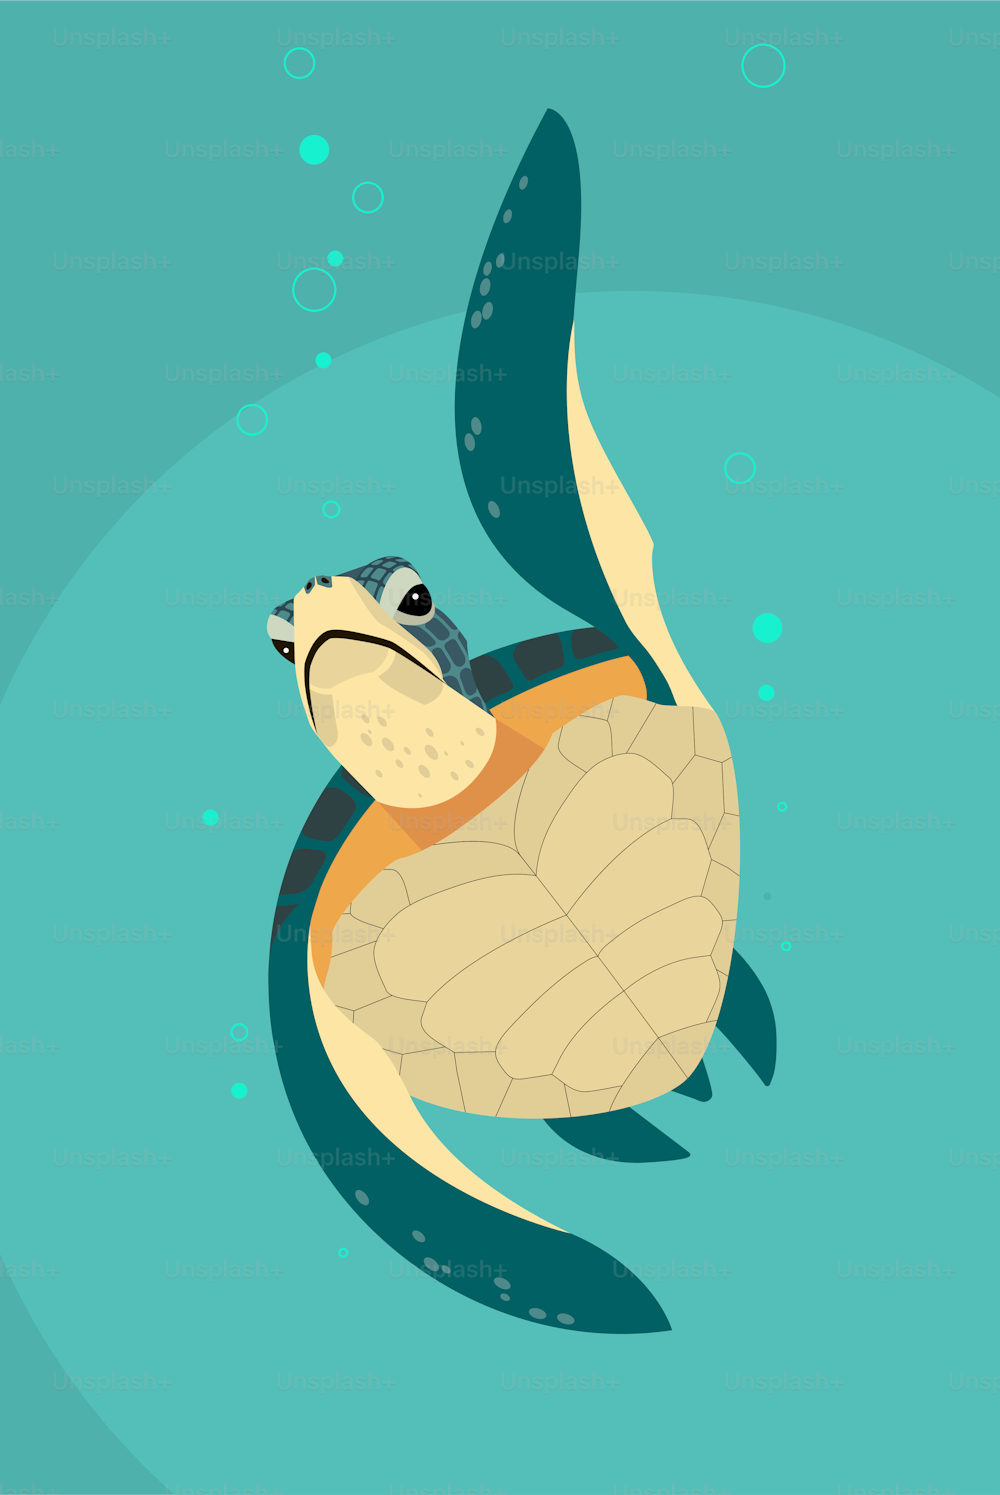 Una tortuga marina verde y amarilla se eleva desde las profundidades del mar hasta la superficie, imagen estilizada